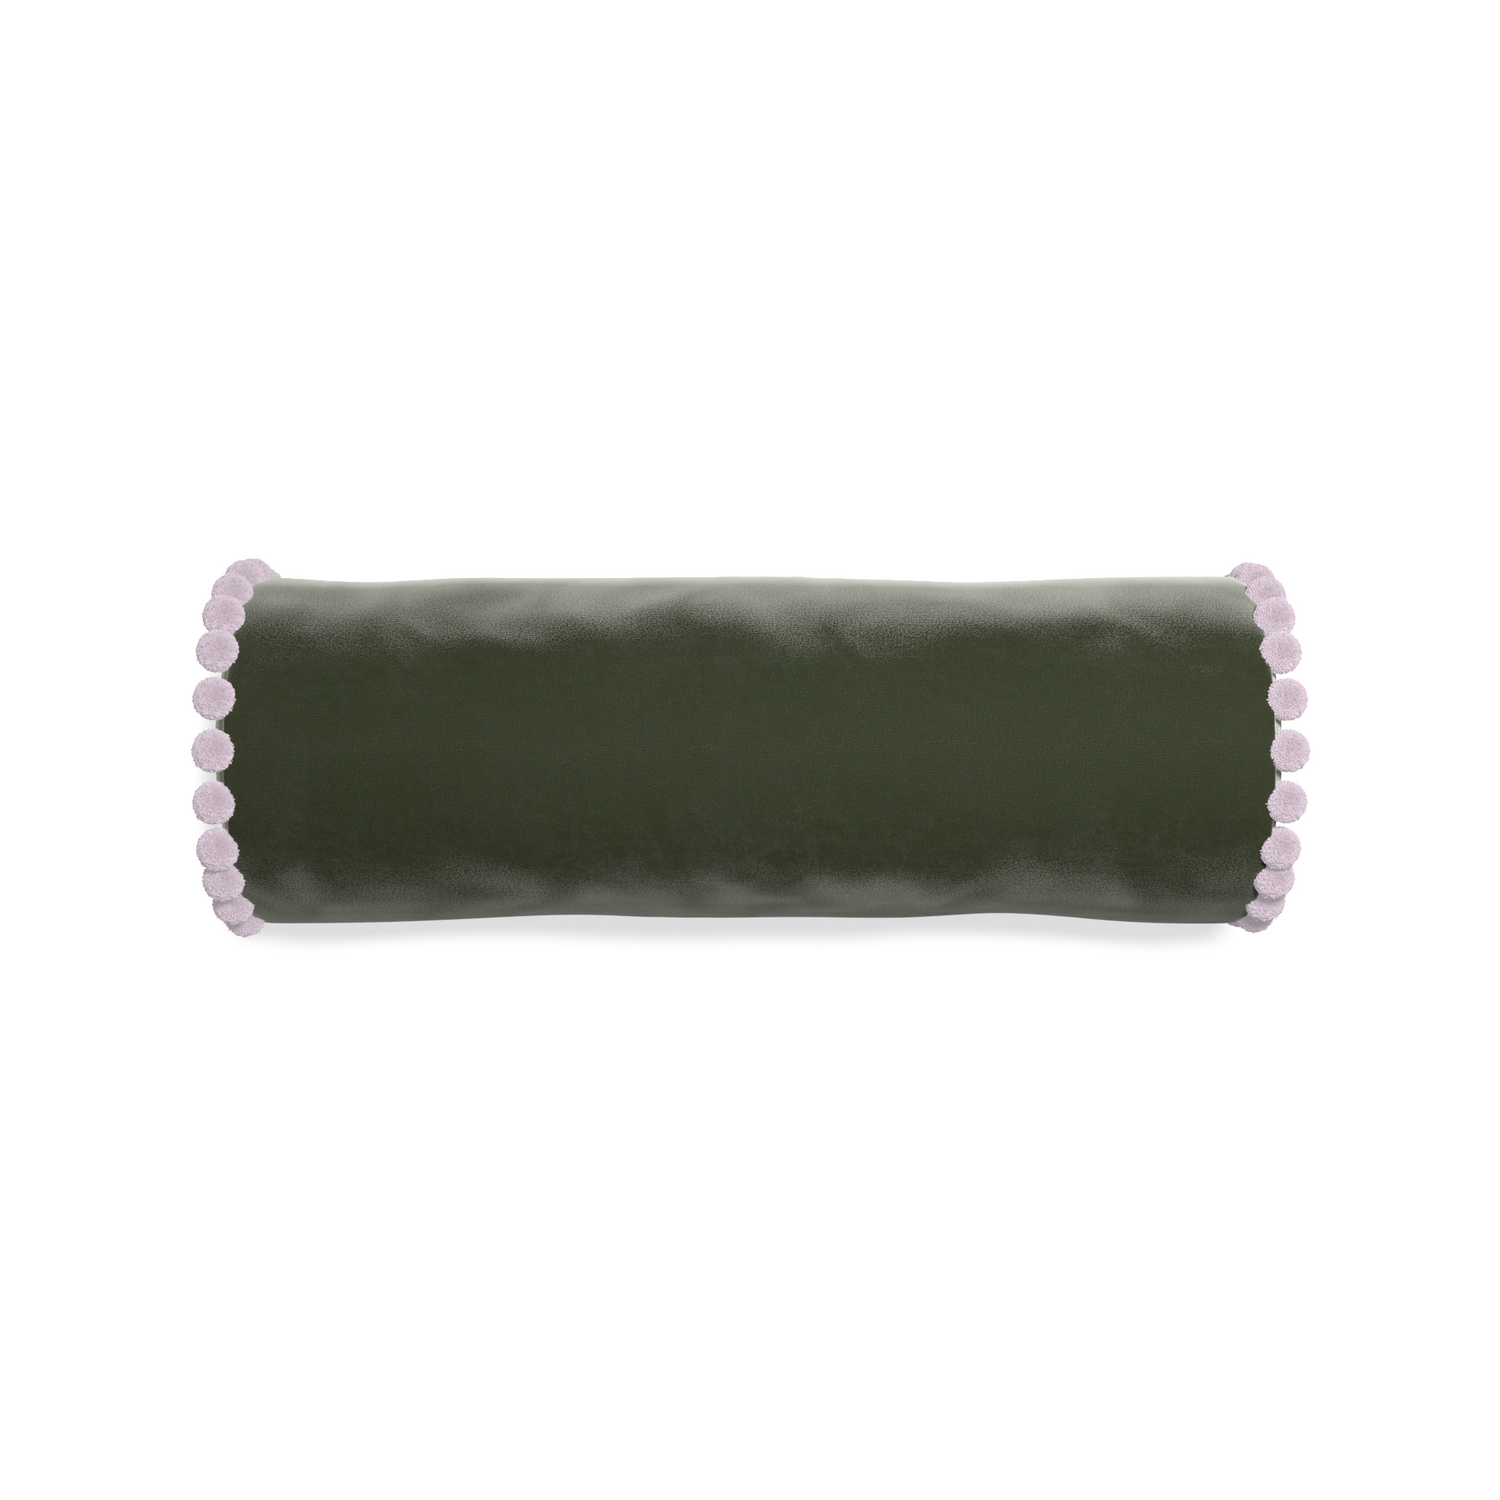 bolster fern green velvet pillow with lilac pom poms